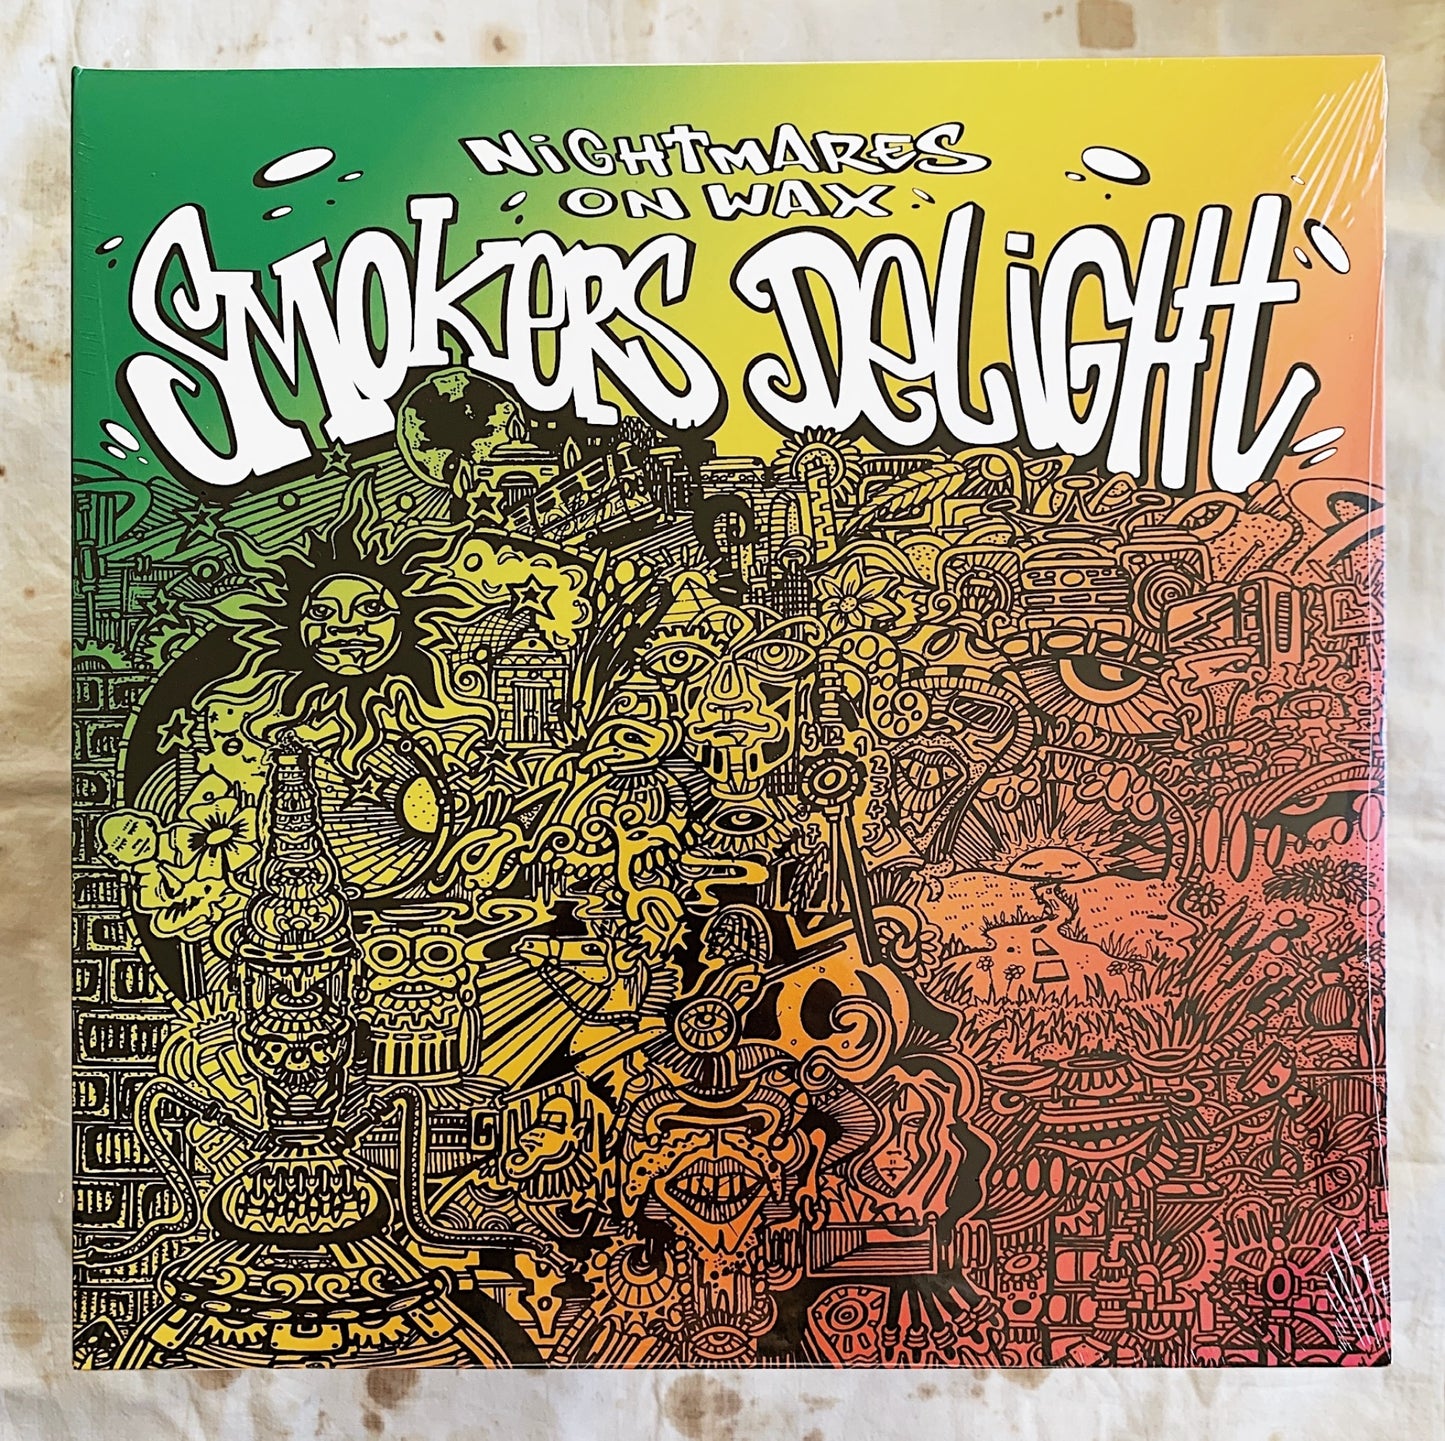 Nightmares On Wax / Smokers Delight LP